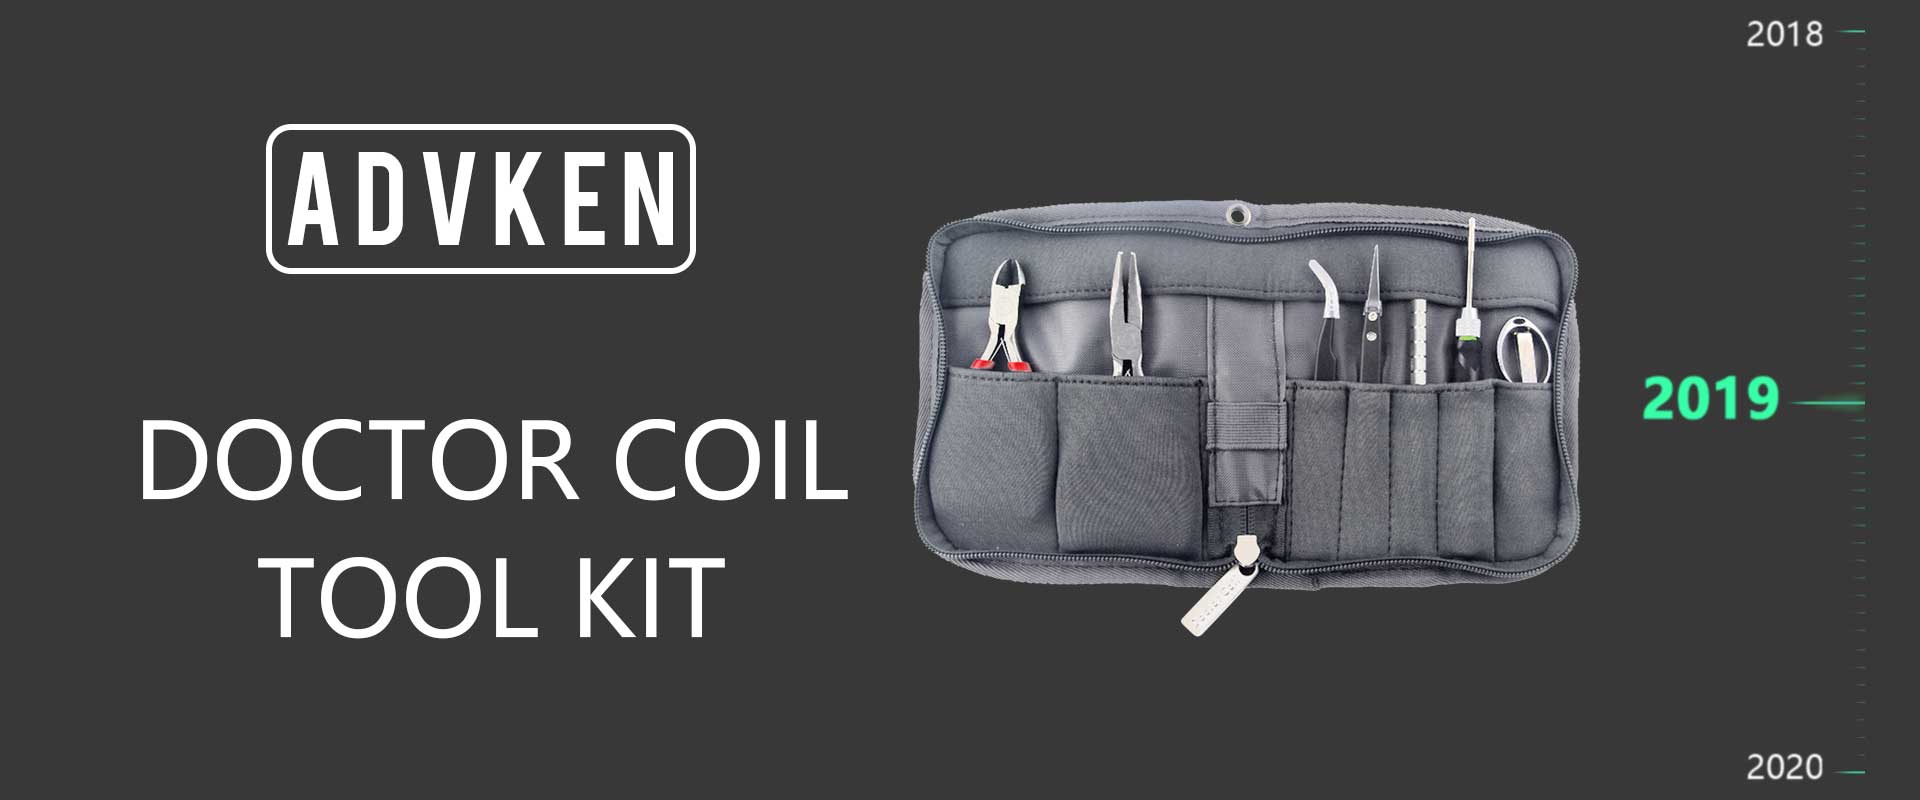 Advken Doctor Coil Tool Kit